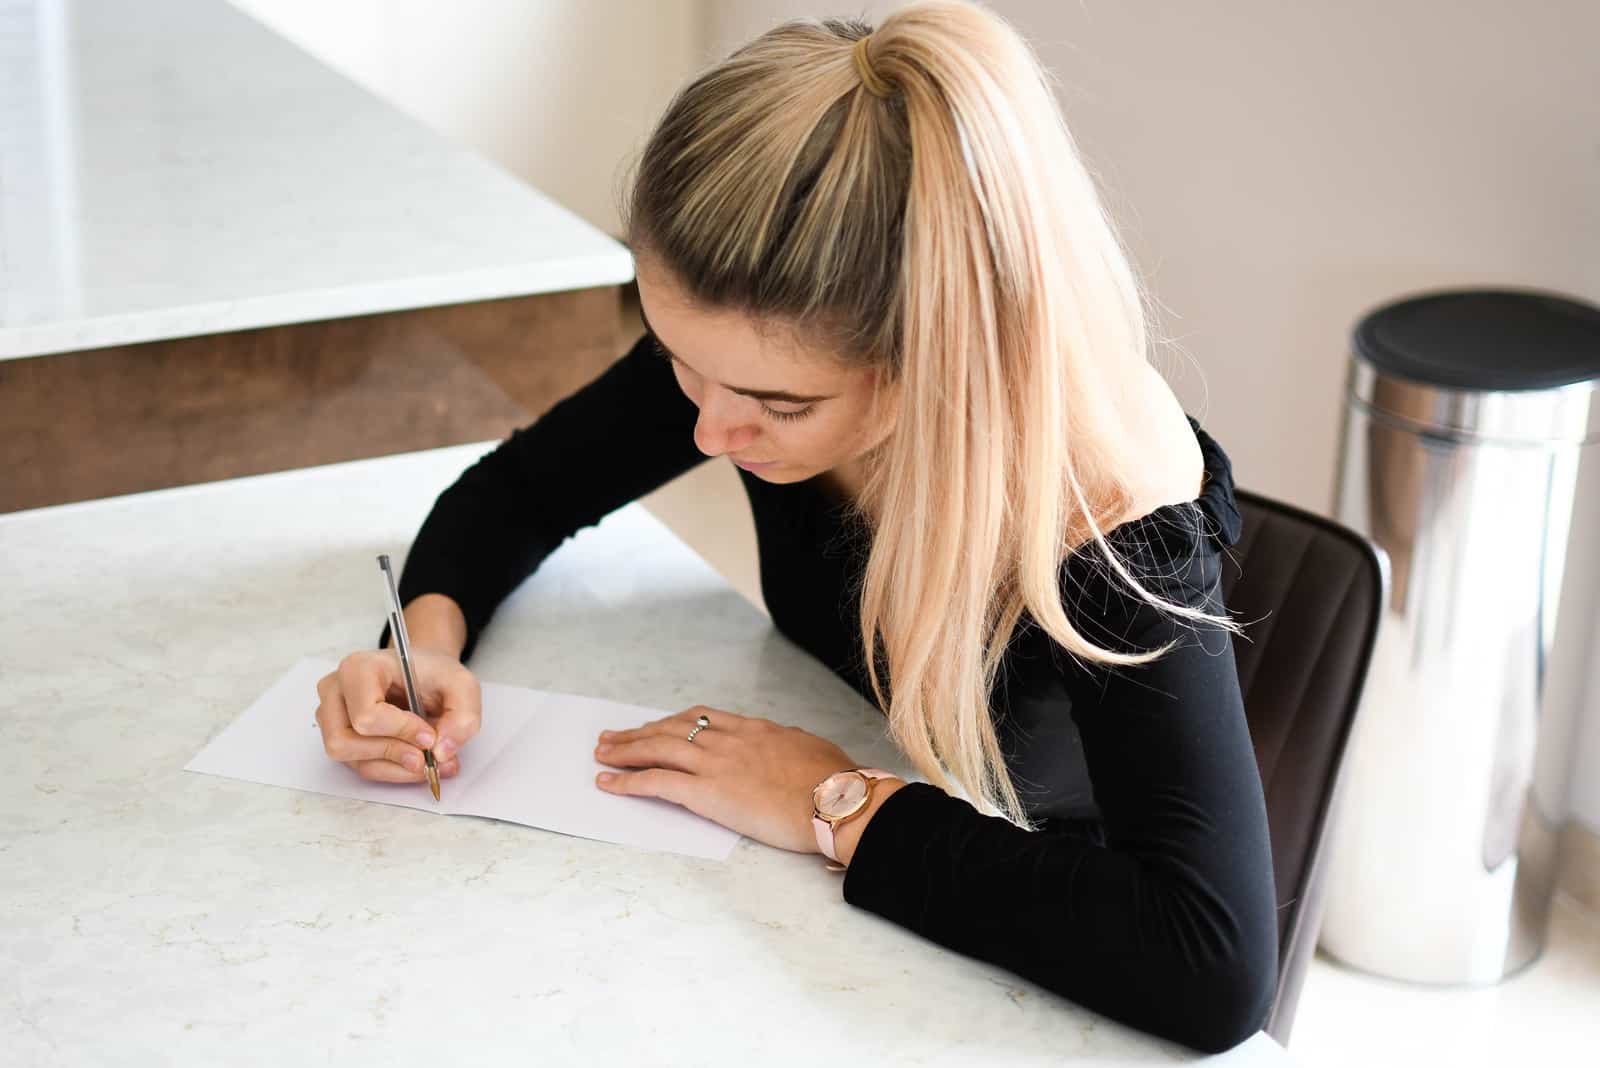 une femme aux cheveux blonds attachés est assise à un bureau et écrit